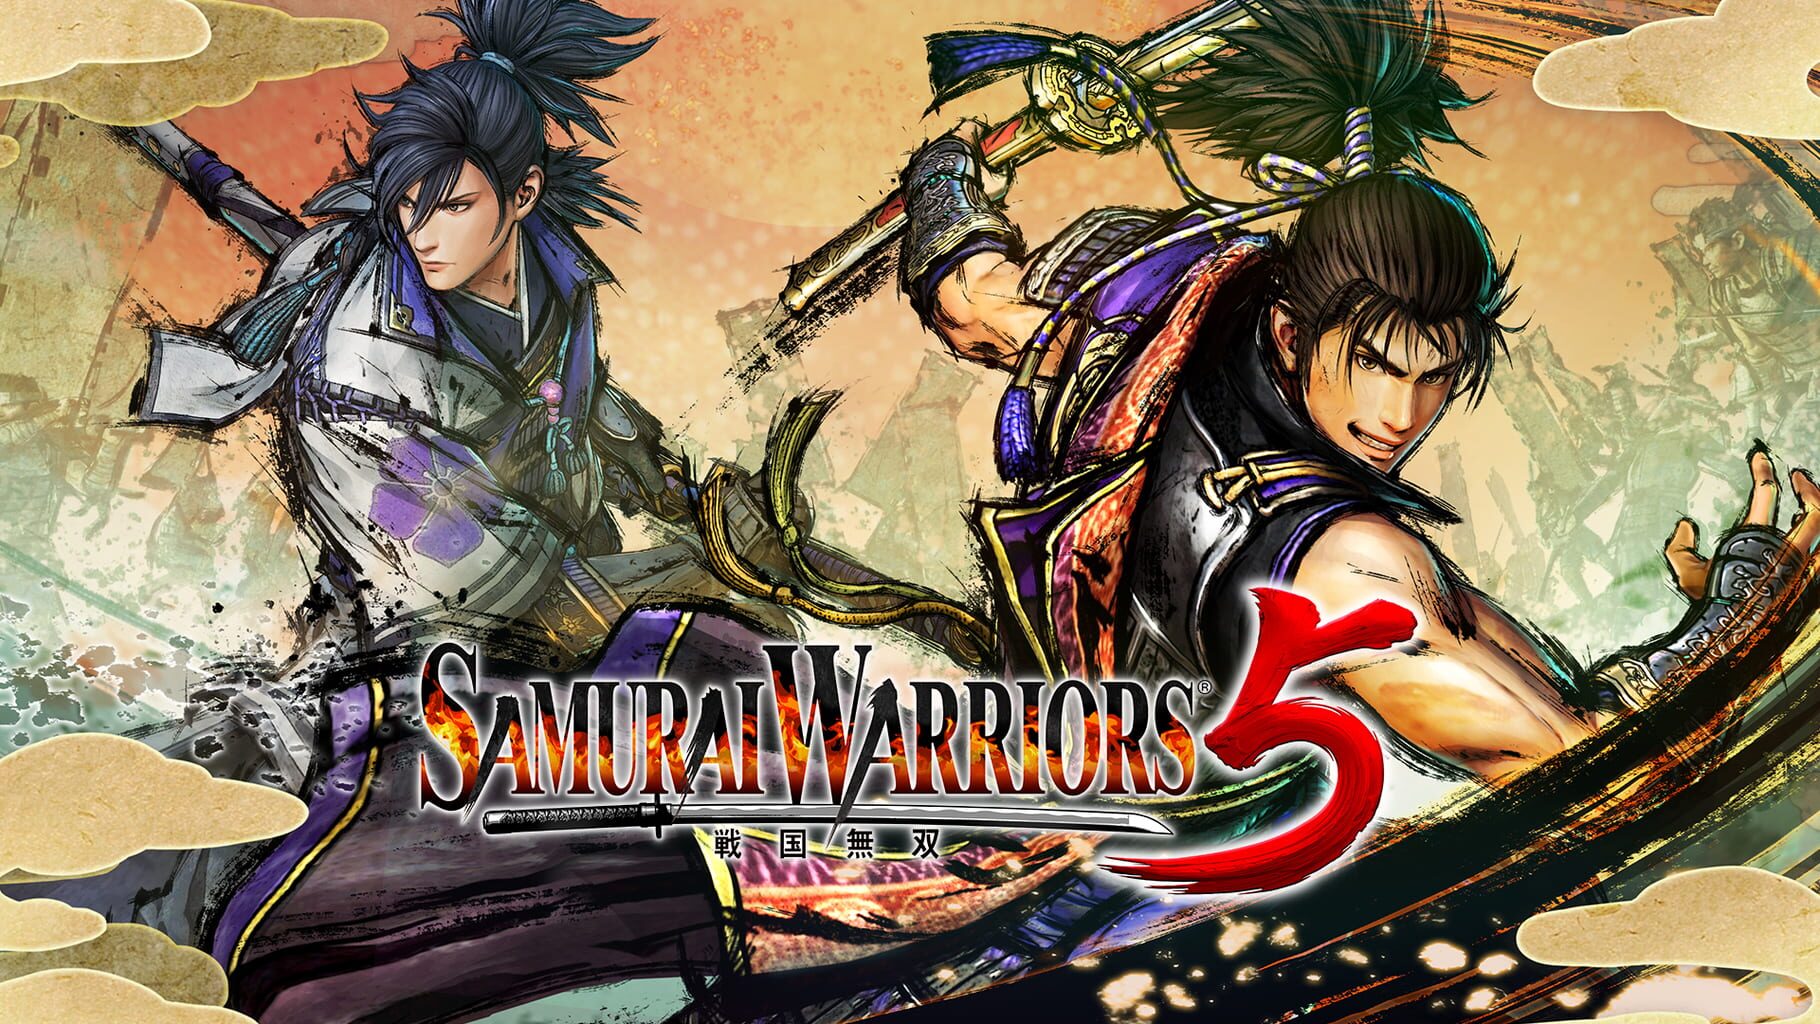 Samurai Warriors 5 artwork